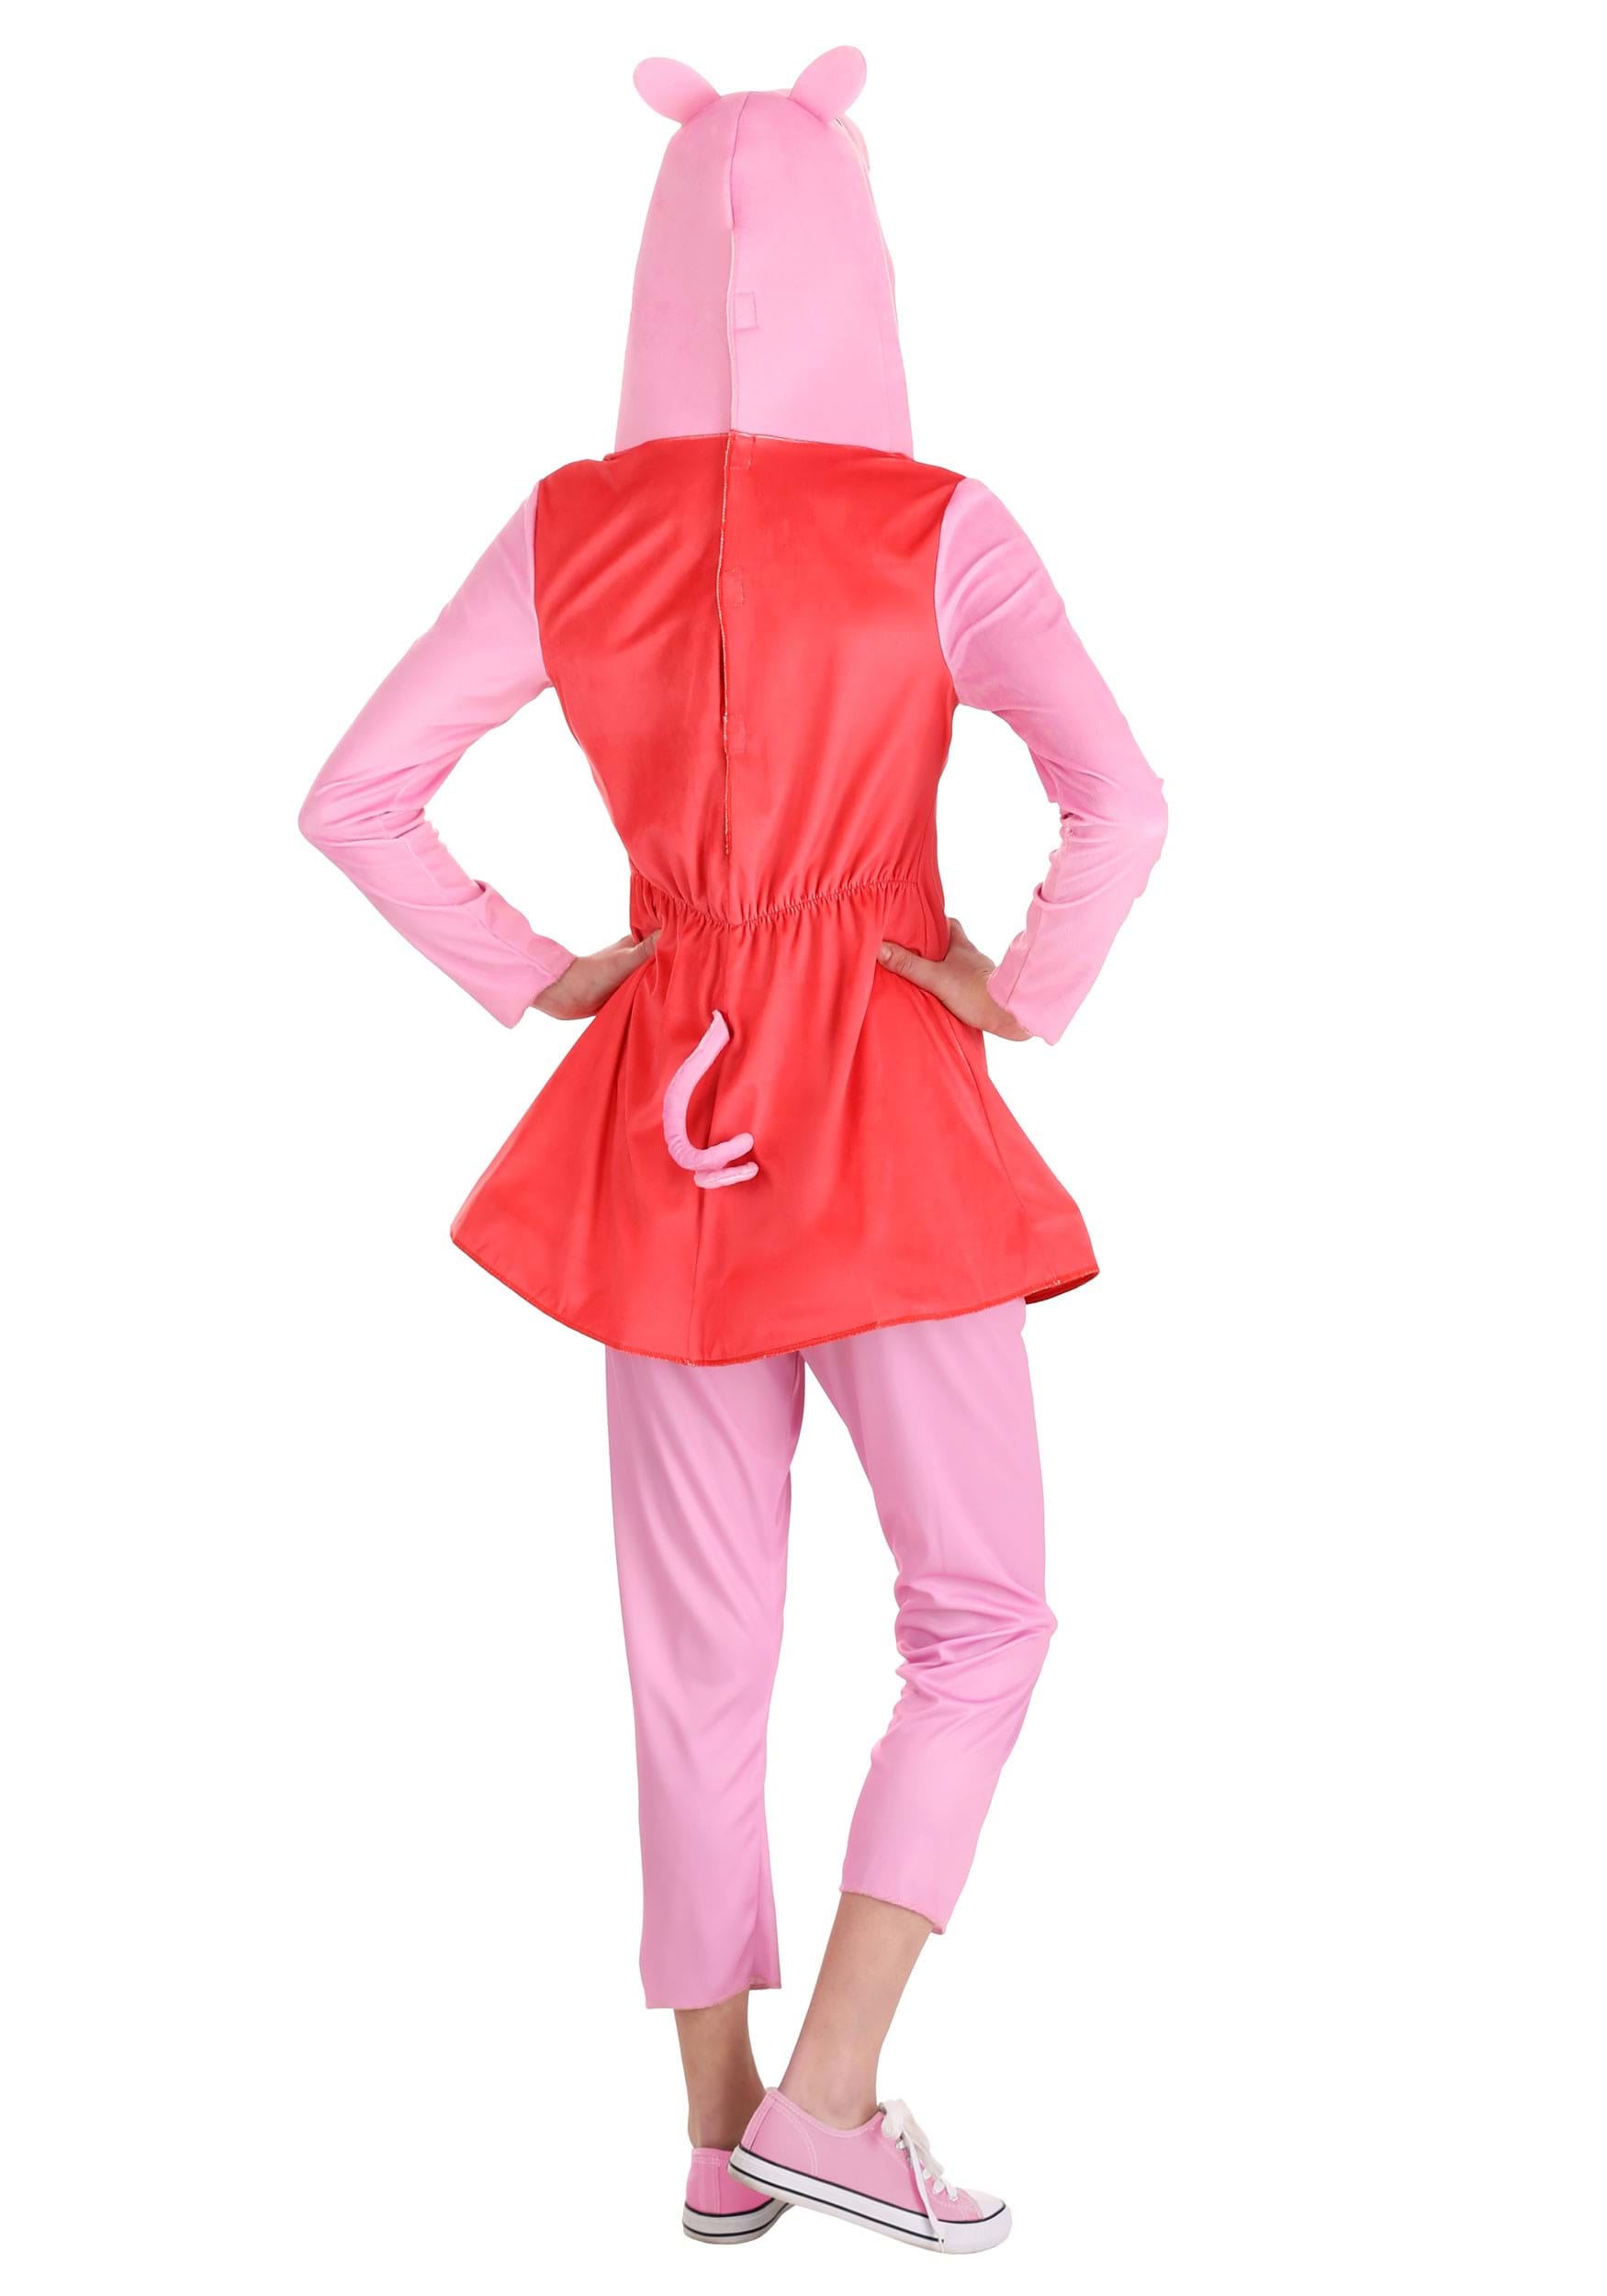 Peppa Pig Women's Deluxe Fancy Dress Costume